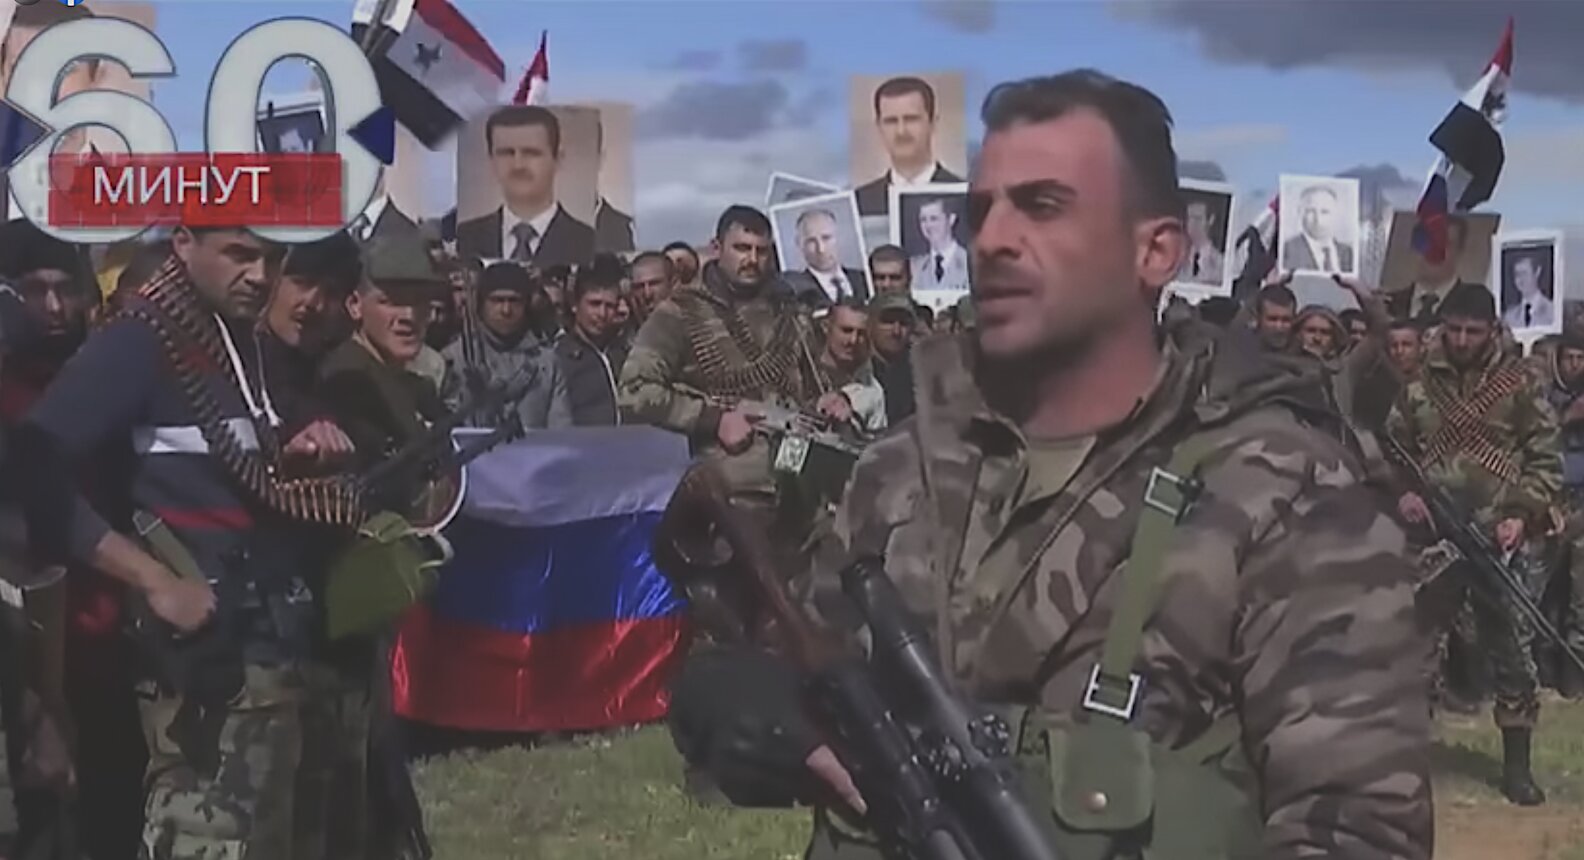 Ο Συριακός Στρατός και ο λαός της Συρίας στέκονται στο πλευρό της Ρωσίας. Στέλνουν χιλιάδες ειδικές δυνάμεις στην Ουκρανία!